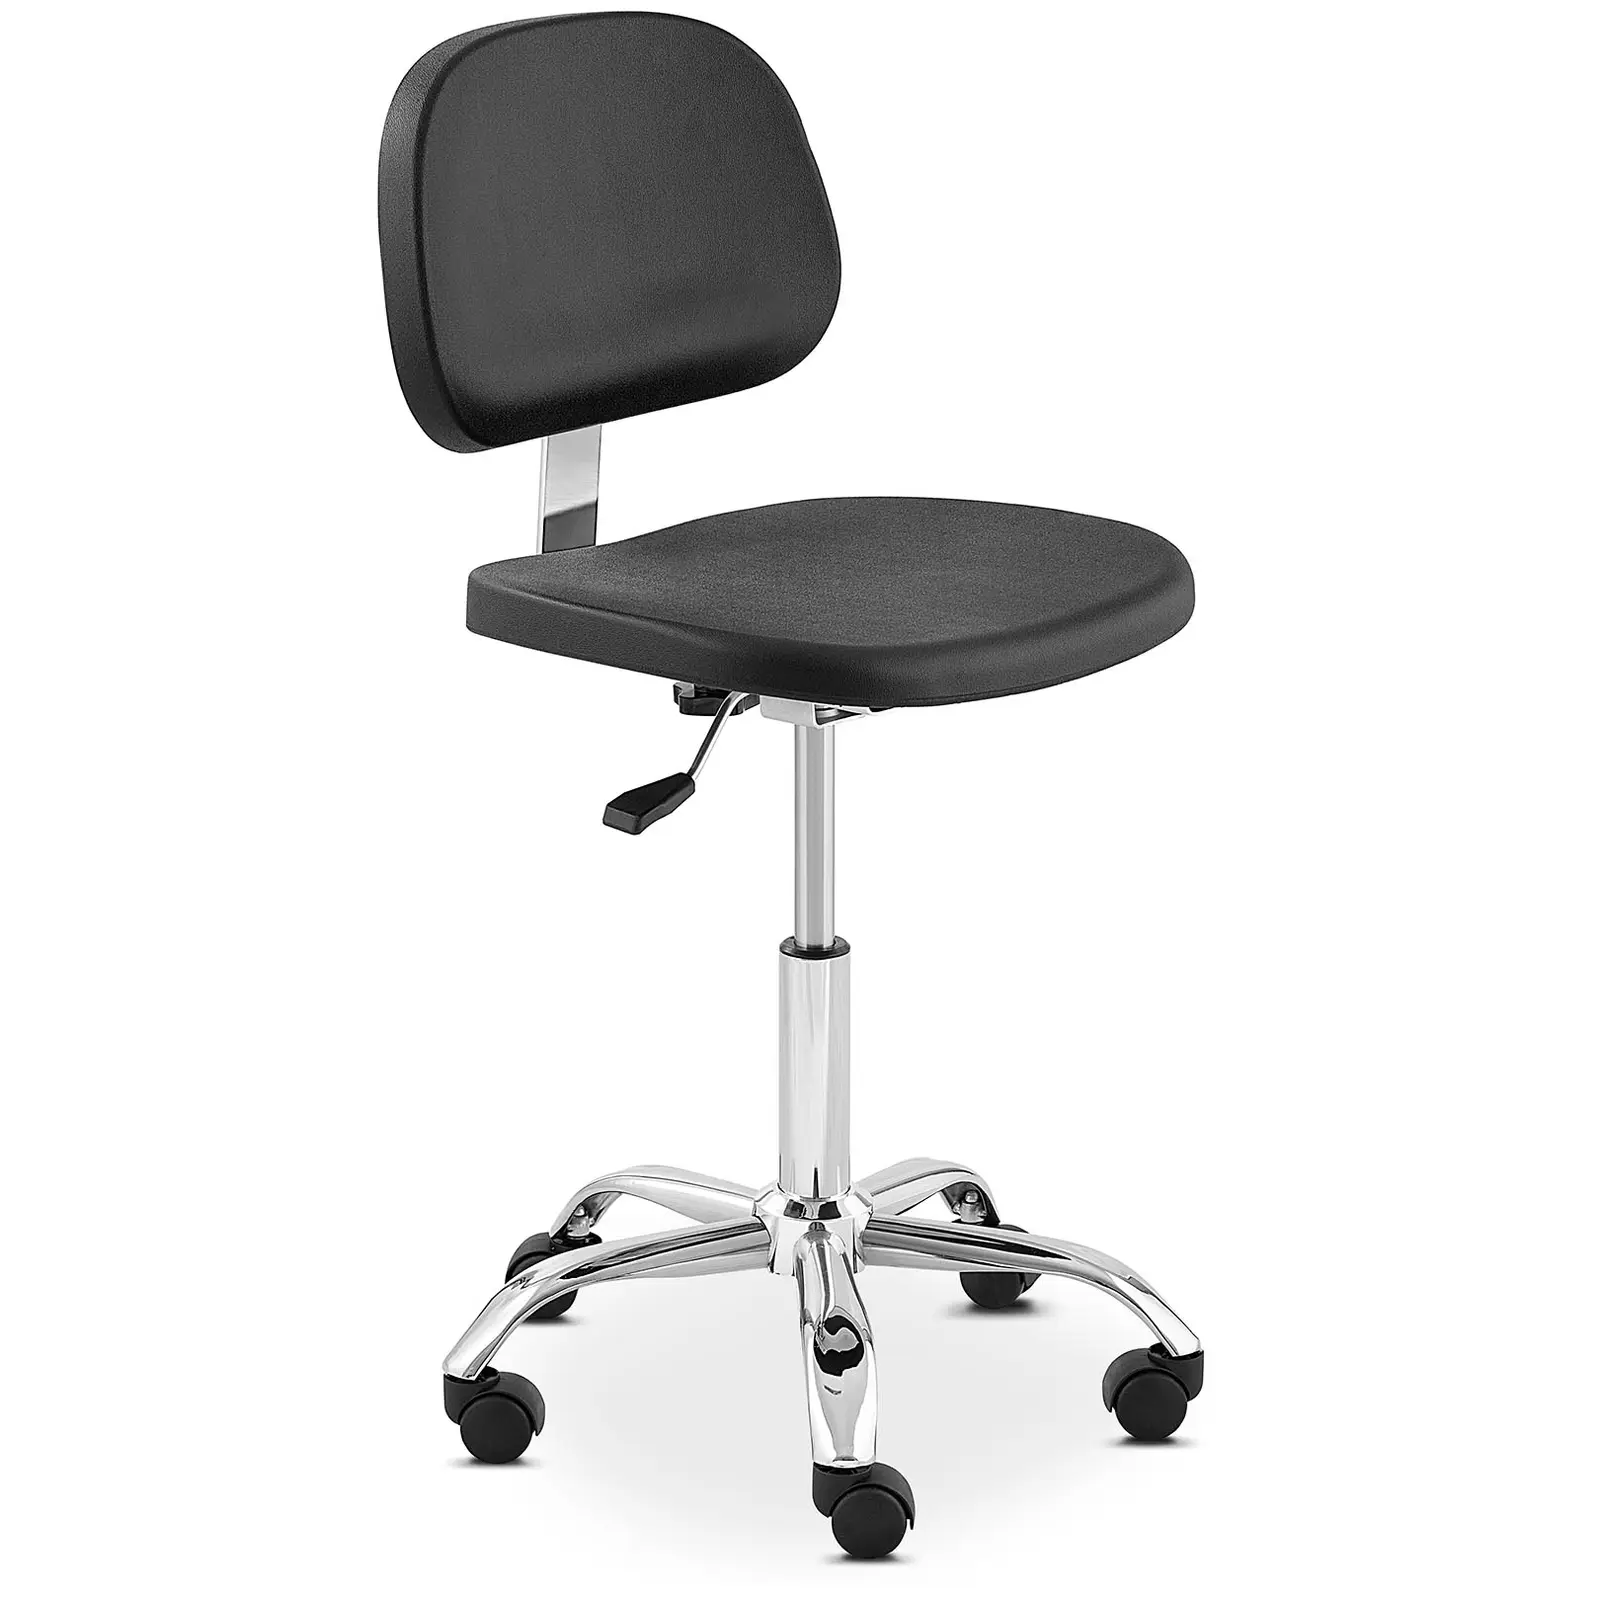 Laboratorní židle – 120 kg – Černá, Chrom – výška nastavitelná v rozmezí 450 - 585 mm